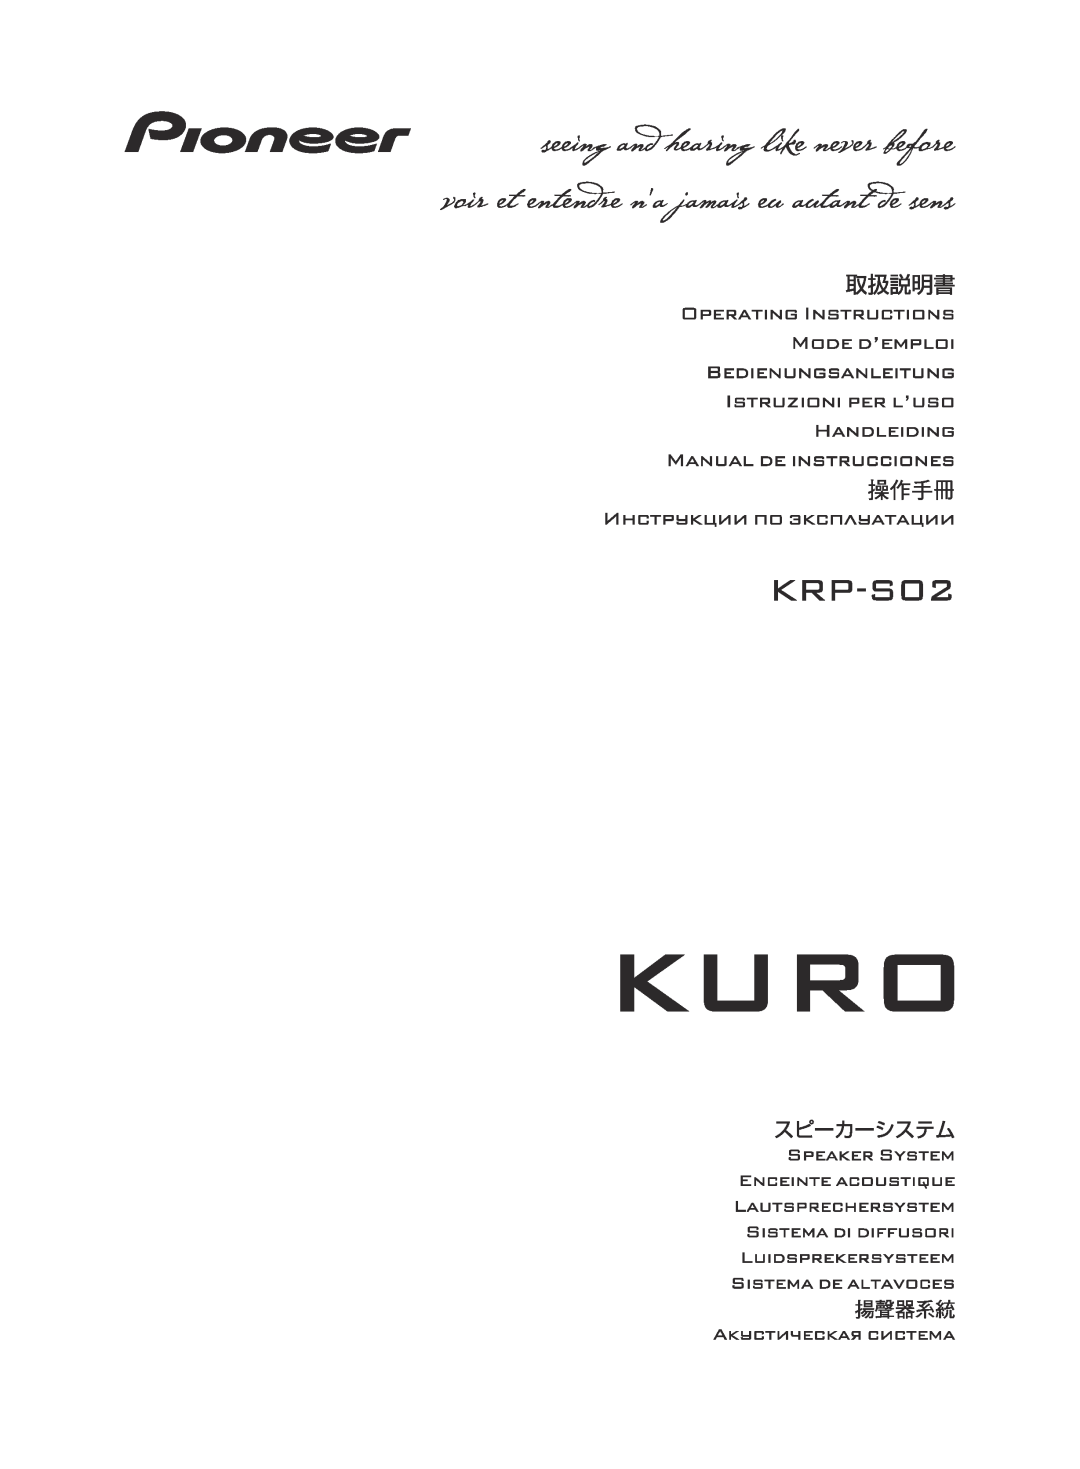 Pioneer KRP-S02 manual 